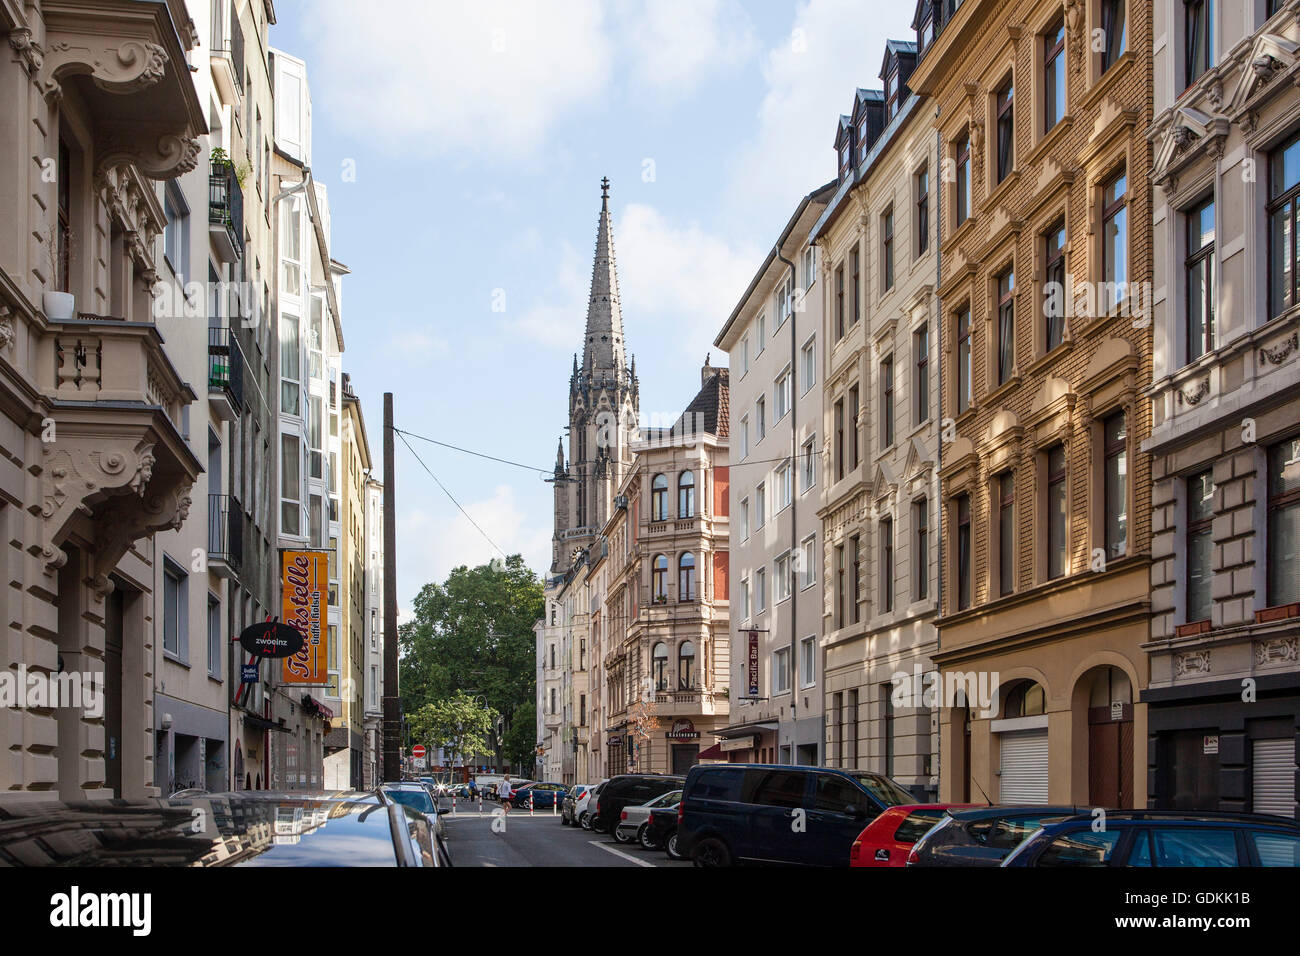 Europa, Colonia, edificios residenciales en la calle Hochstaden, Herz Jesu iglesia en la plaza Zuelpicher Foto de stock